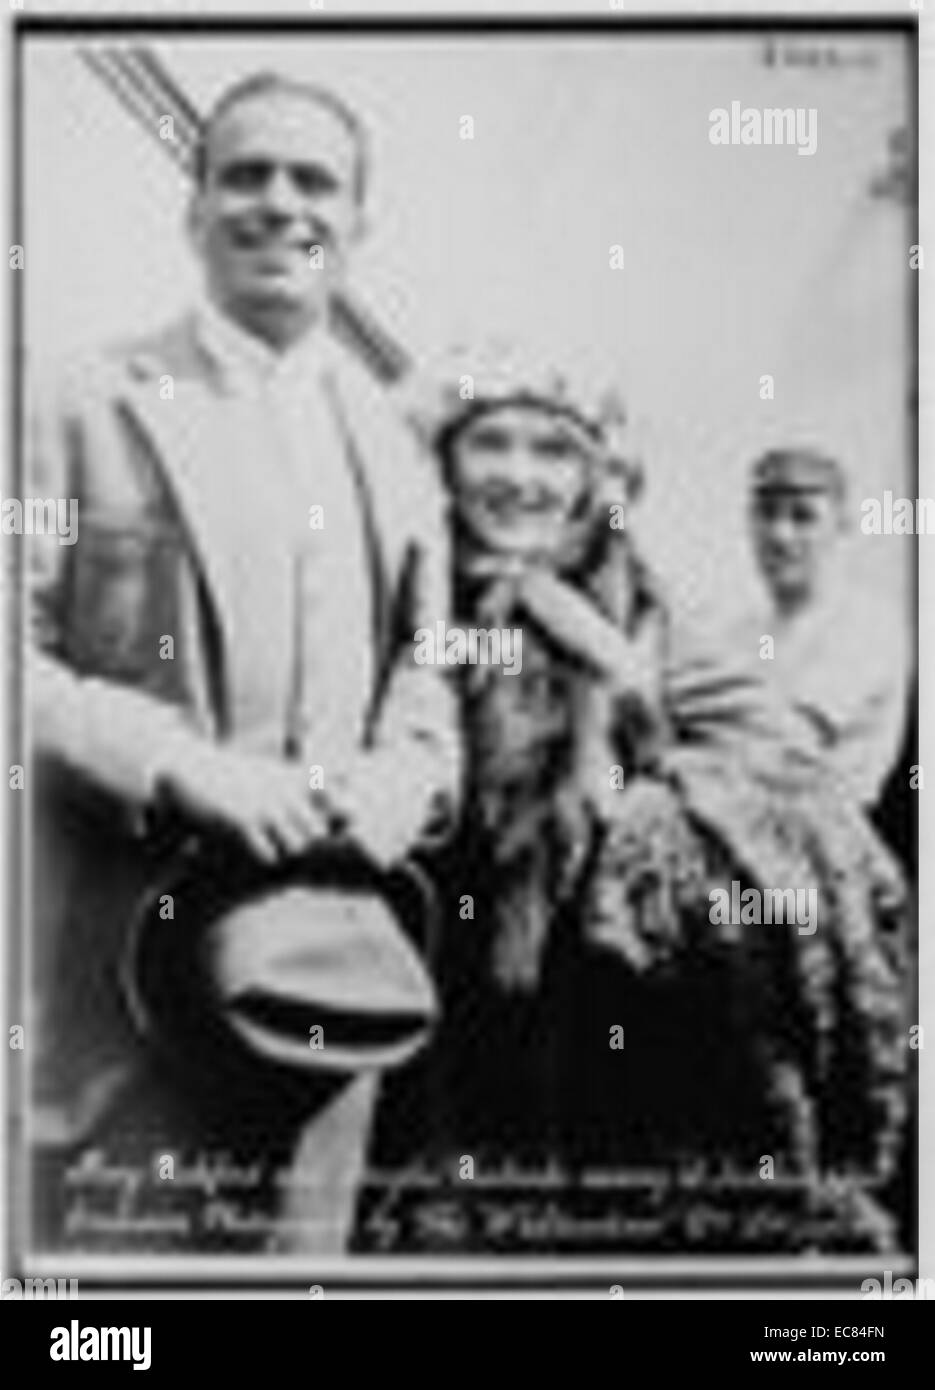 Foto von Doug Fairbanks (1883-1939) und seiner Frau Mary Pickford (1892-1979) Ankunft in Southampton. Datiert 1920 Stockfoto